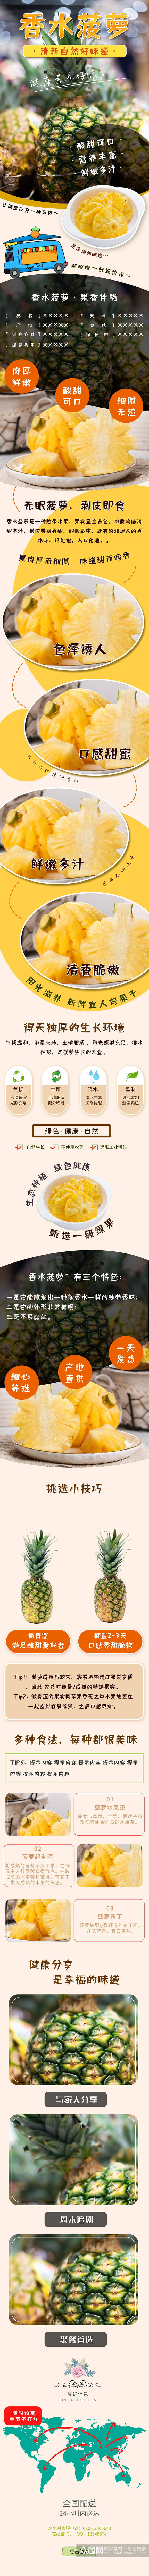 香水菠萝详情页产品展示素材